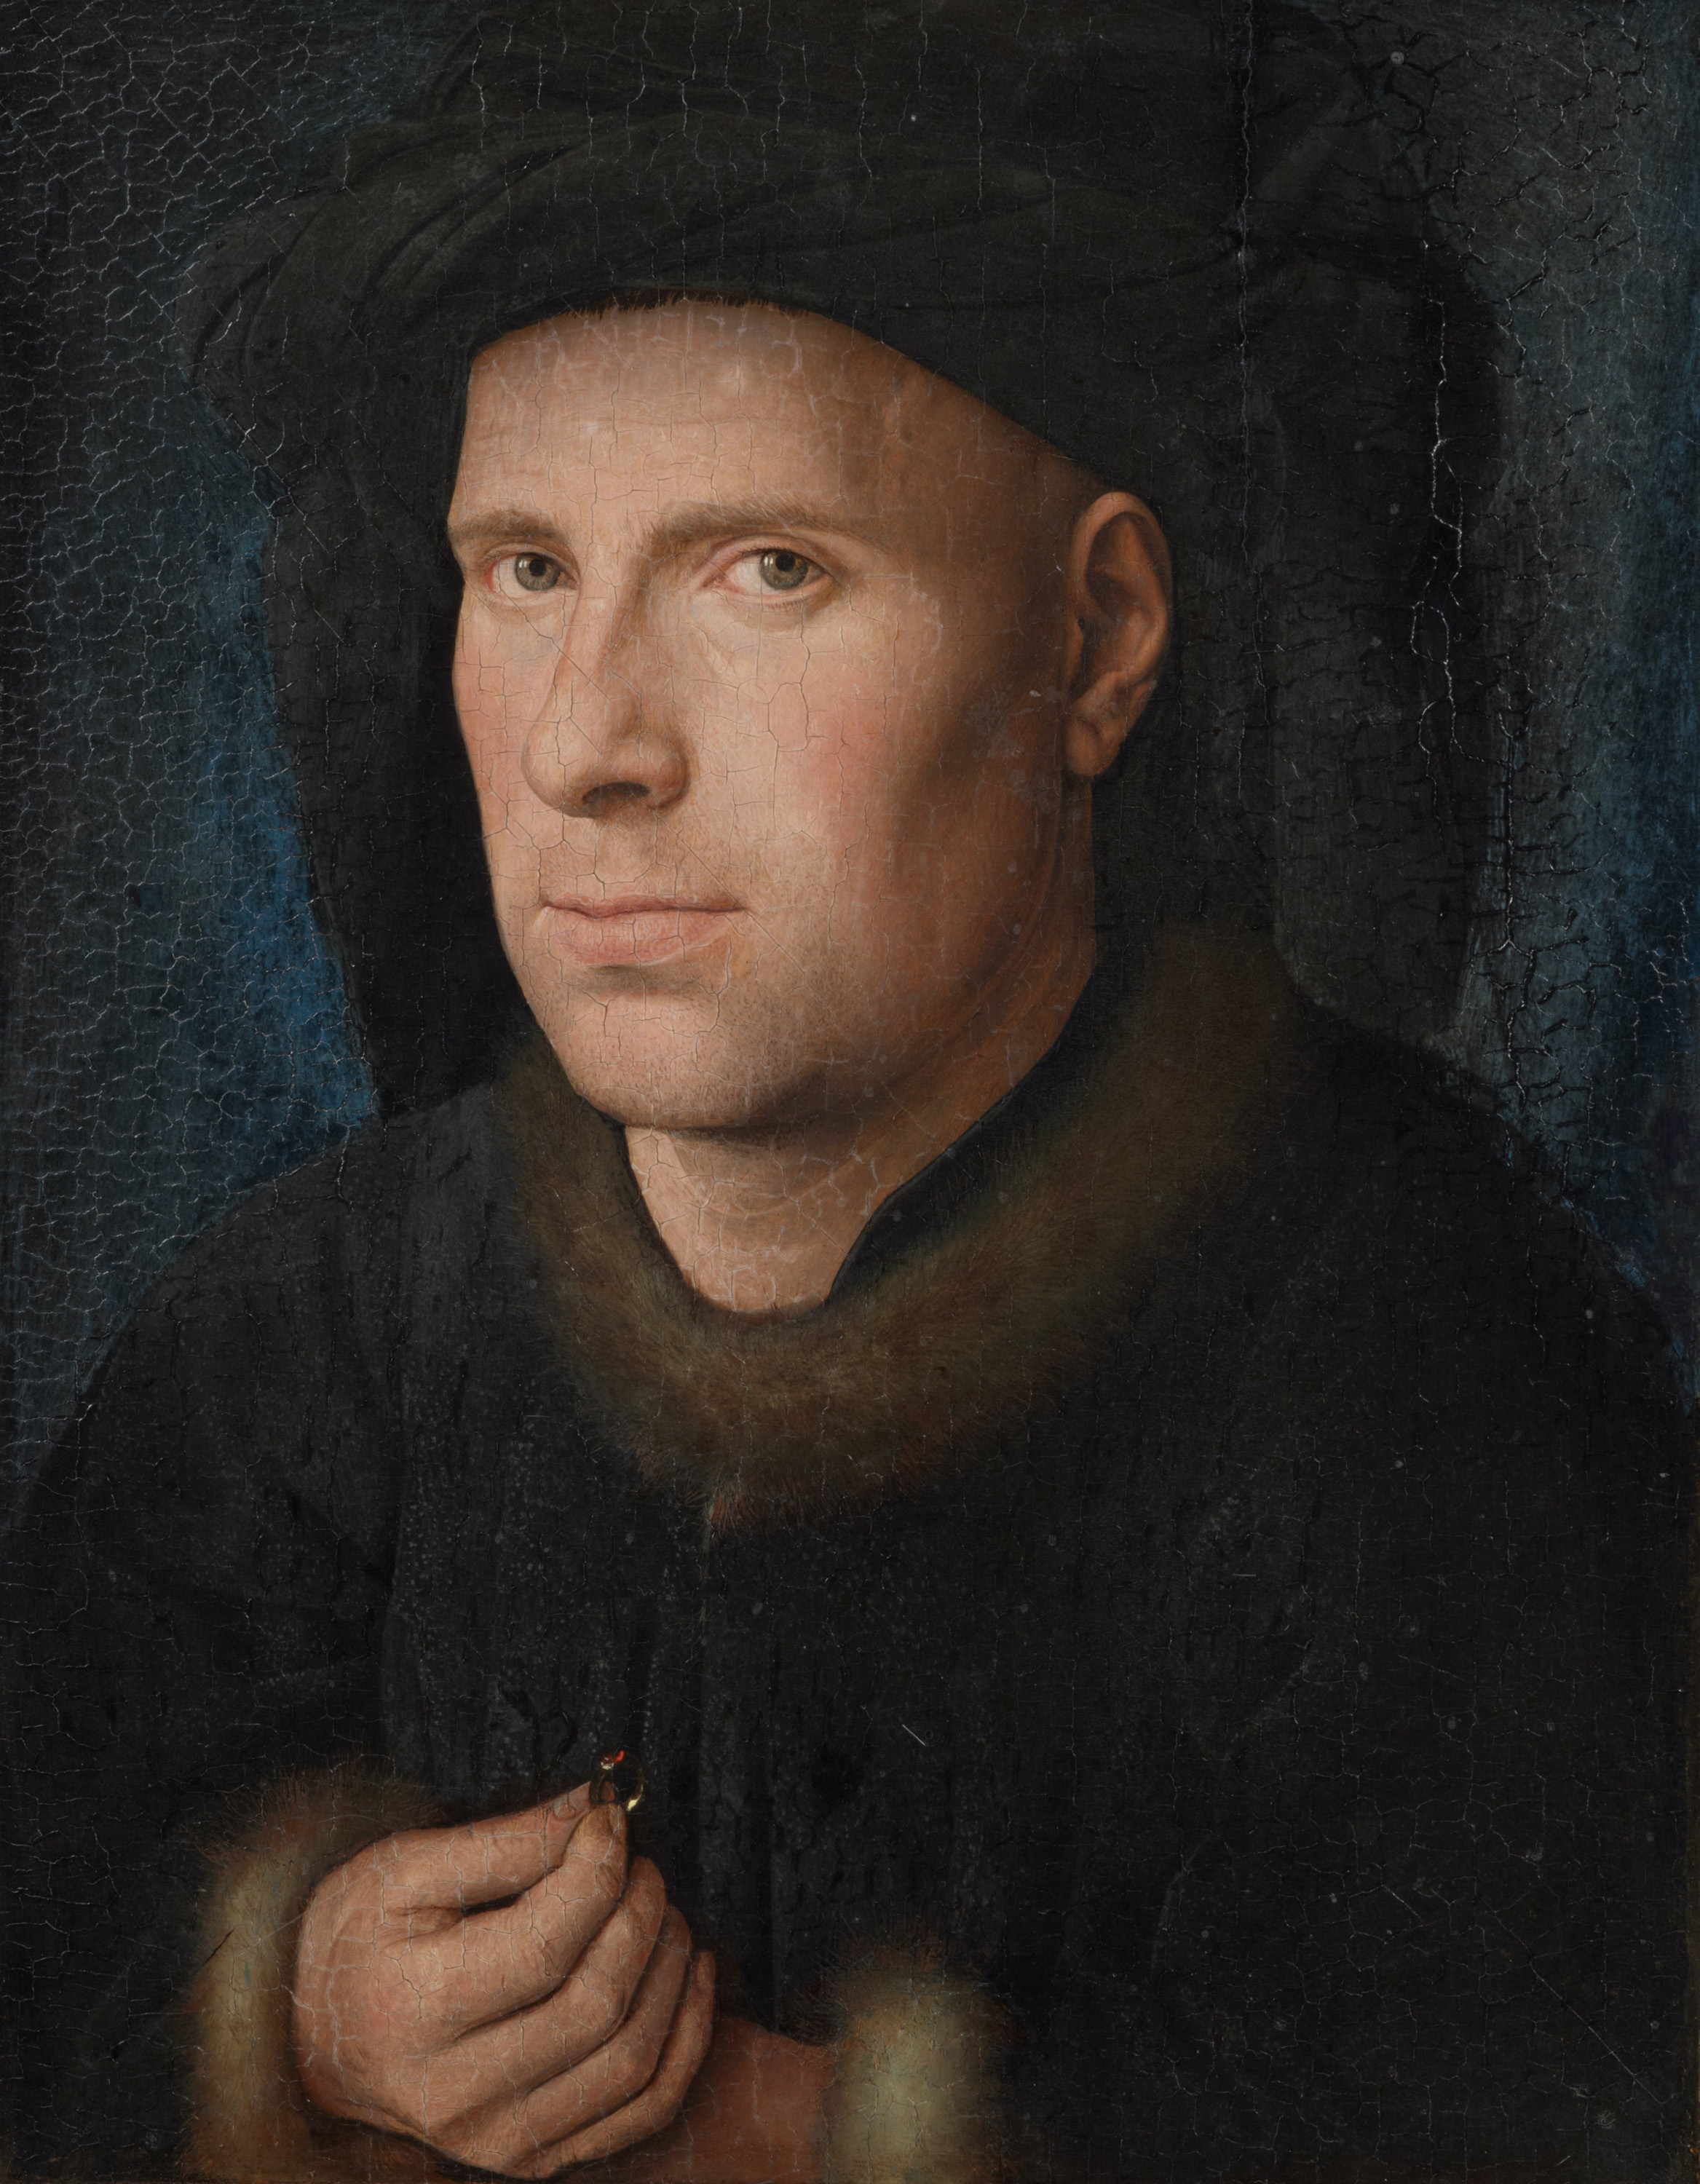 Ювелір Ян де Лейв by Jan van Eyck - 1436 - 33 см х 27,5 см 